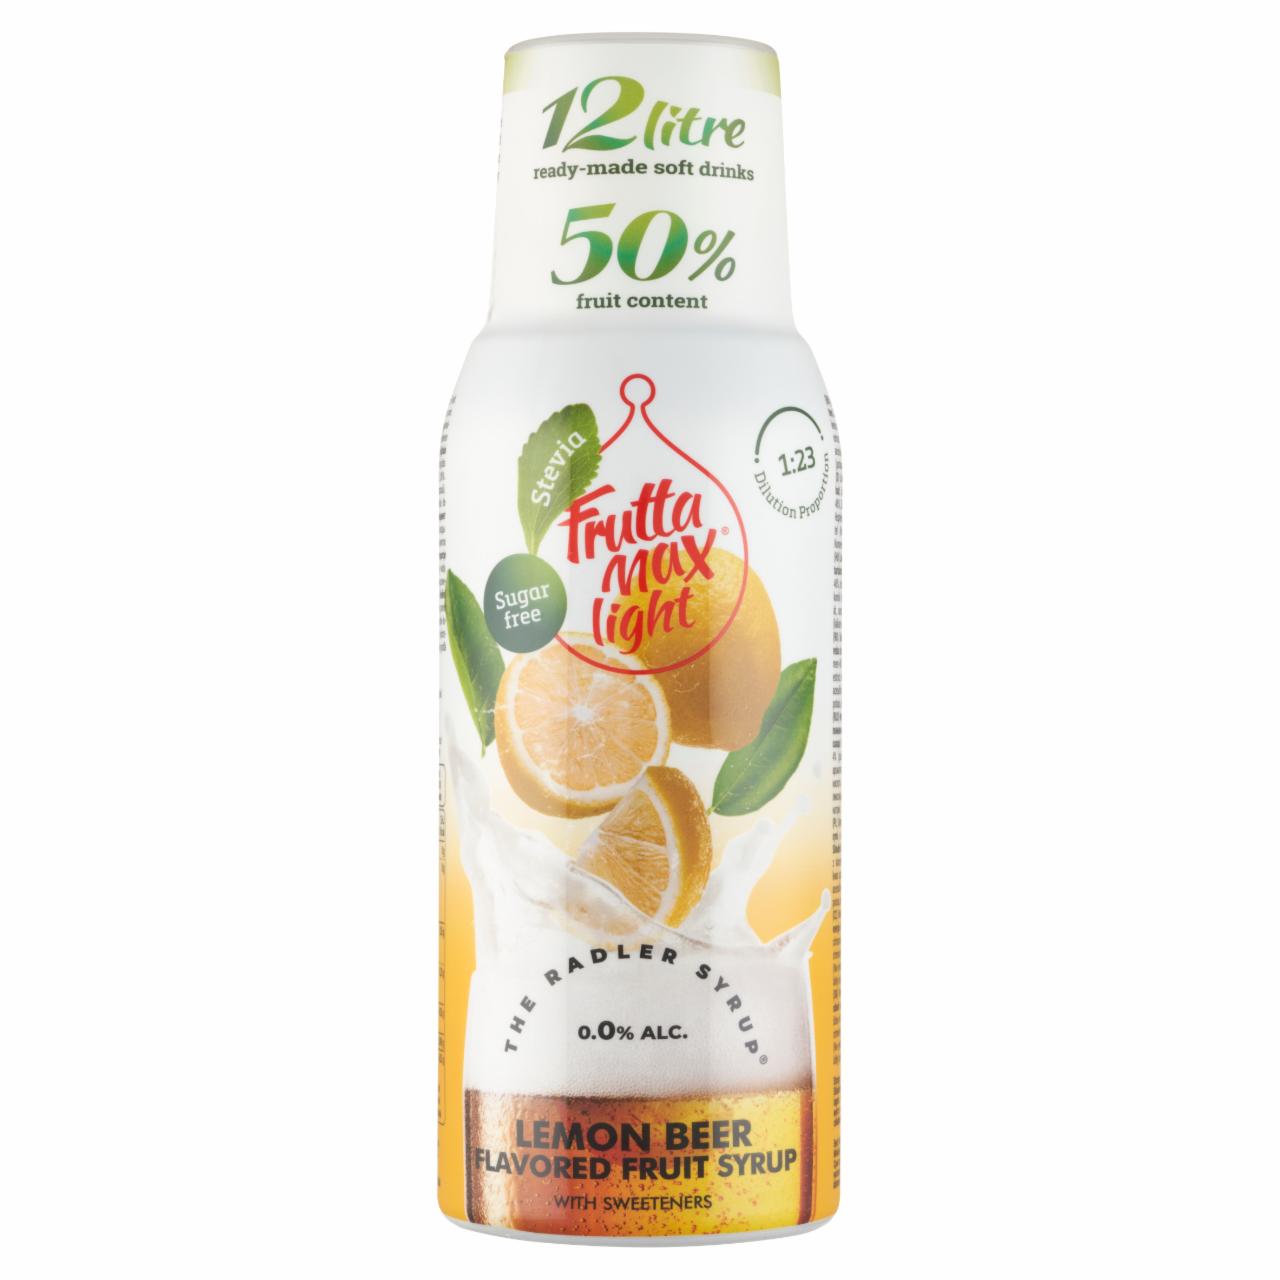 Képek - FruttaMax Light lime-os sör ízű gyümölcsszörp édesítőszerekkel 500 ml